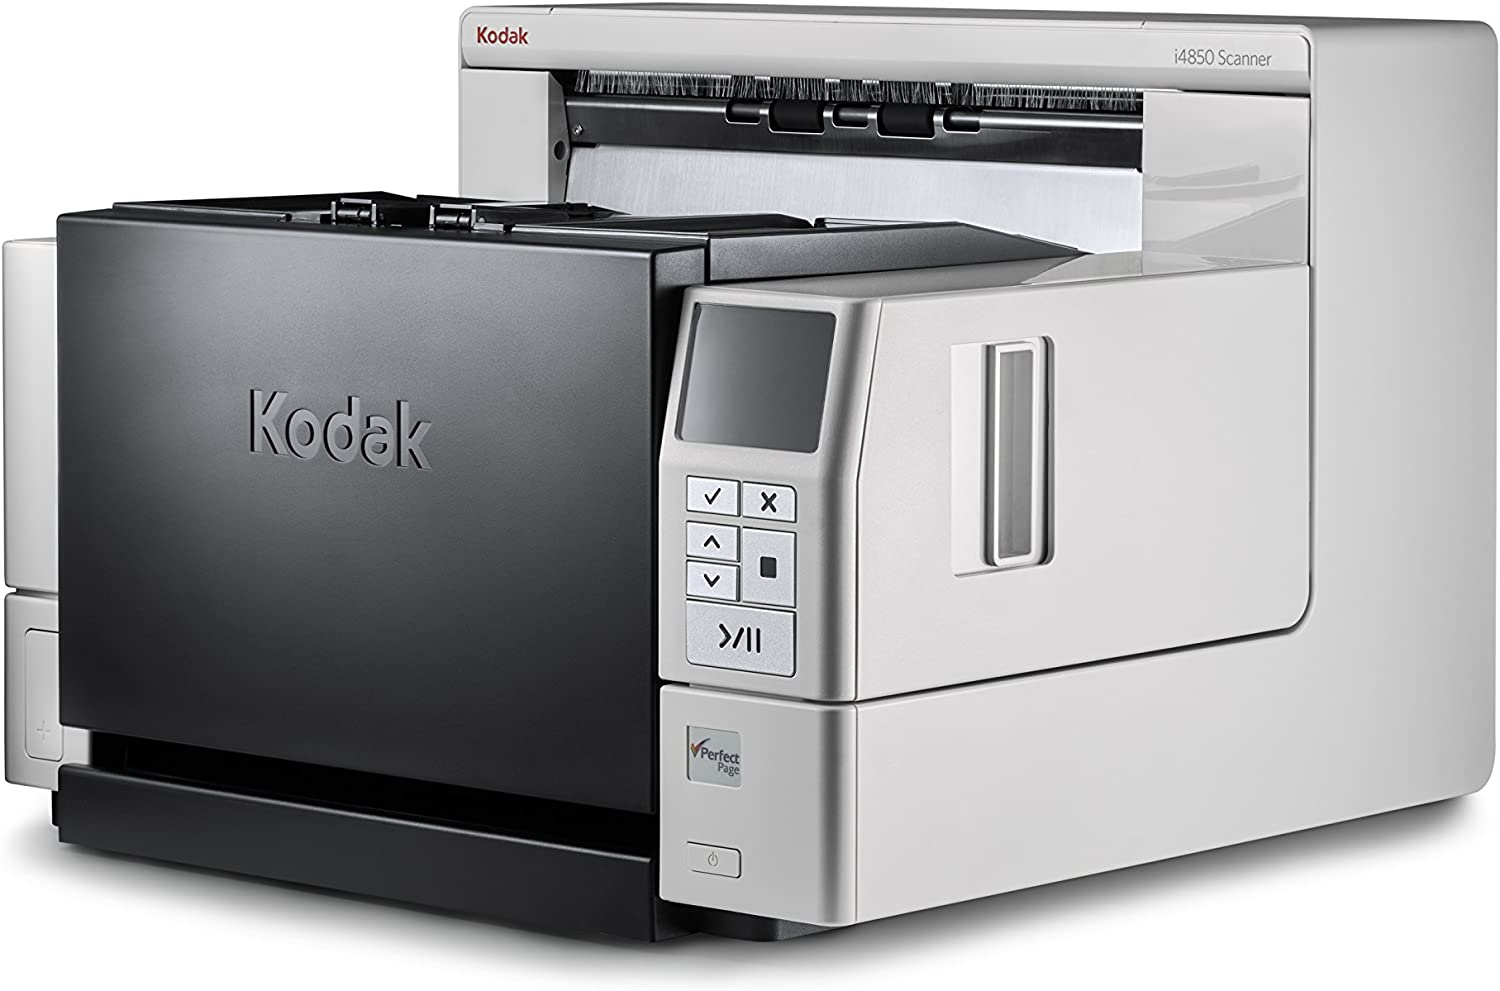 Kodak - ZY1534 i4850 sở hữu tốc độ scan tài liệu vượt trội